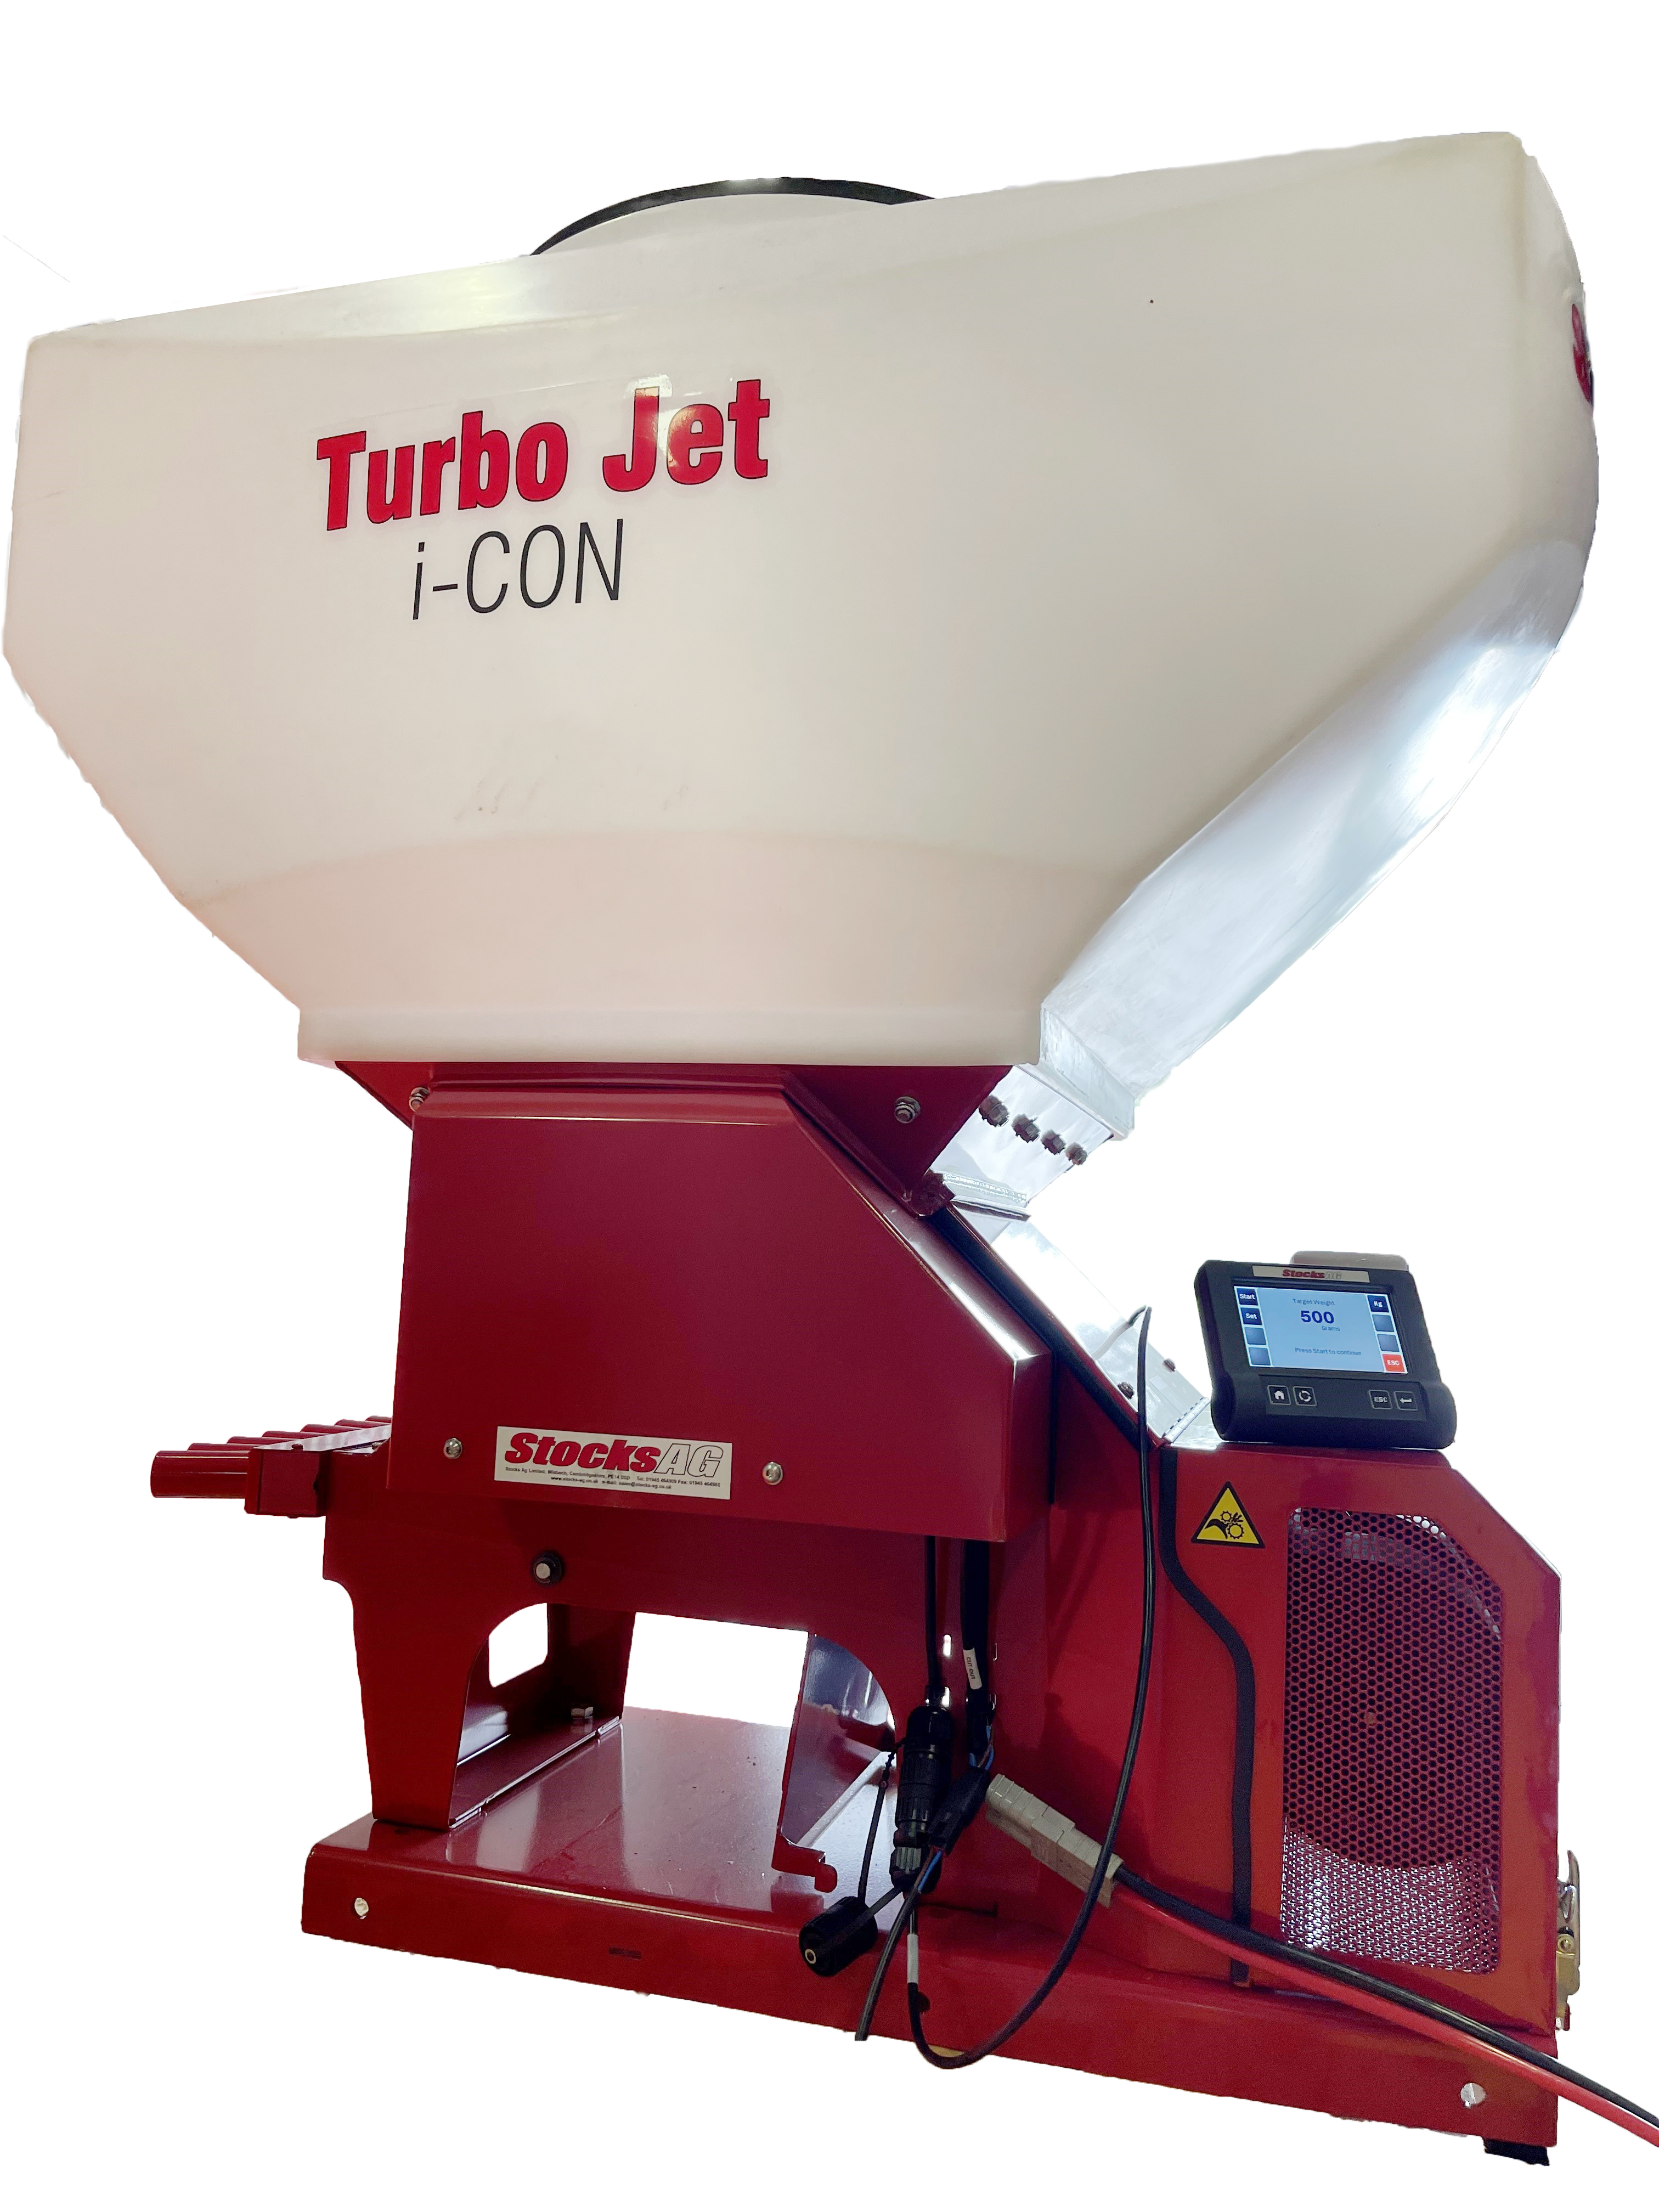 Piensiemenkylvökone Turbo Jet 10 i-CON